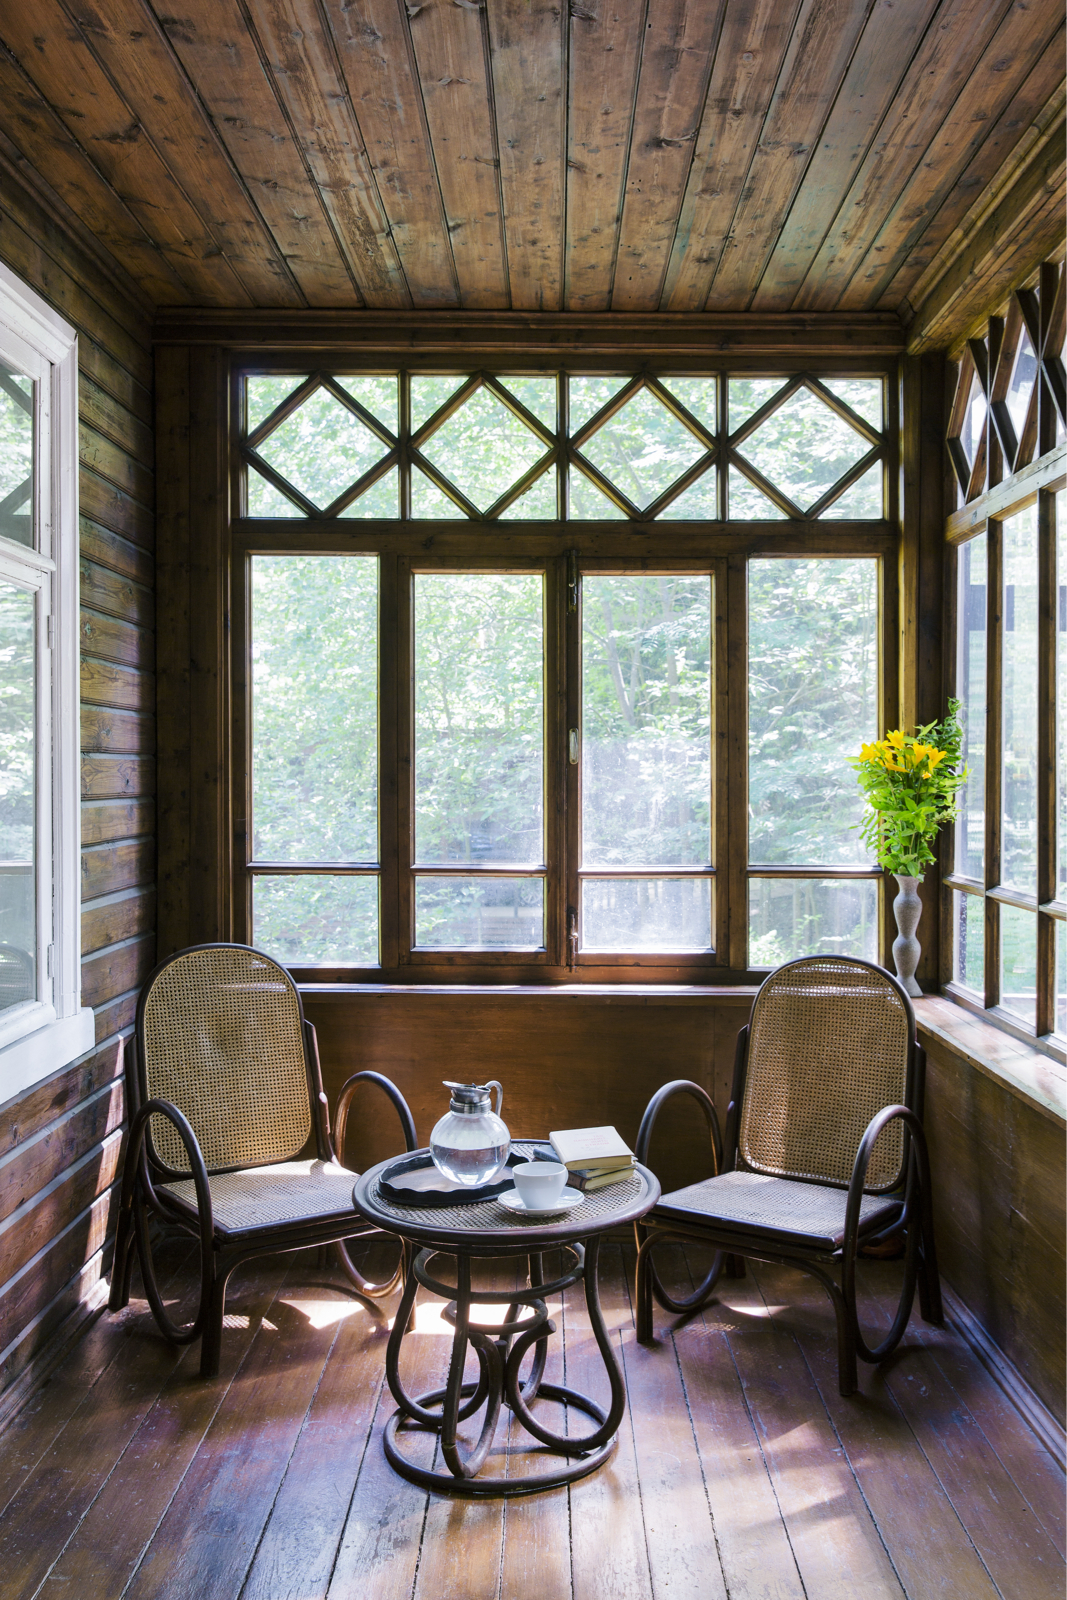 Phòng trà nhỏ xinh nhìn ra không gian sân vườn lãng mạn với cây cối tươi xanh, ánh nắng mai xuyên qua ô cửa kính cùng bộ bàn ghế cổ điển đầy chất thơ.